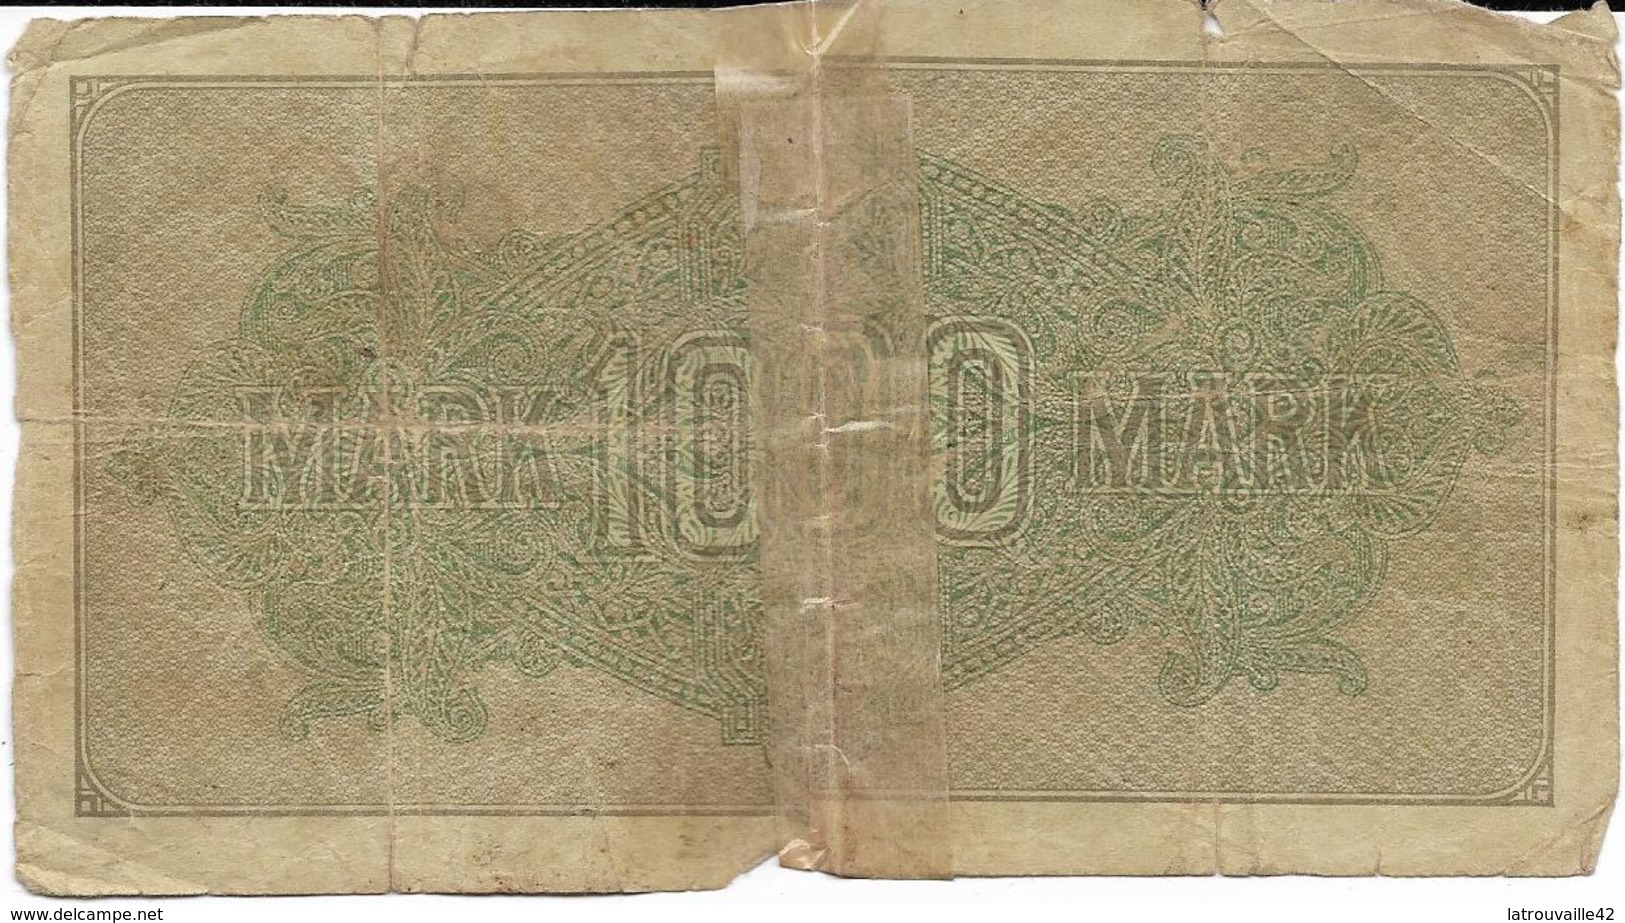 Billet De 1000 Marks Allemagne 15/09/1922 - 1000 Mark